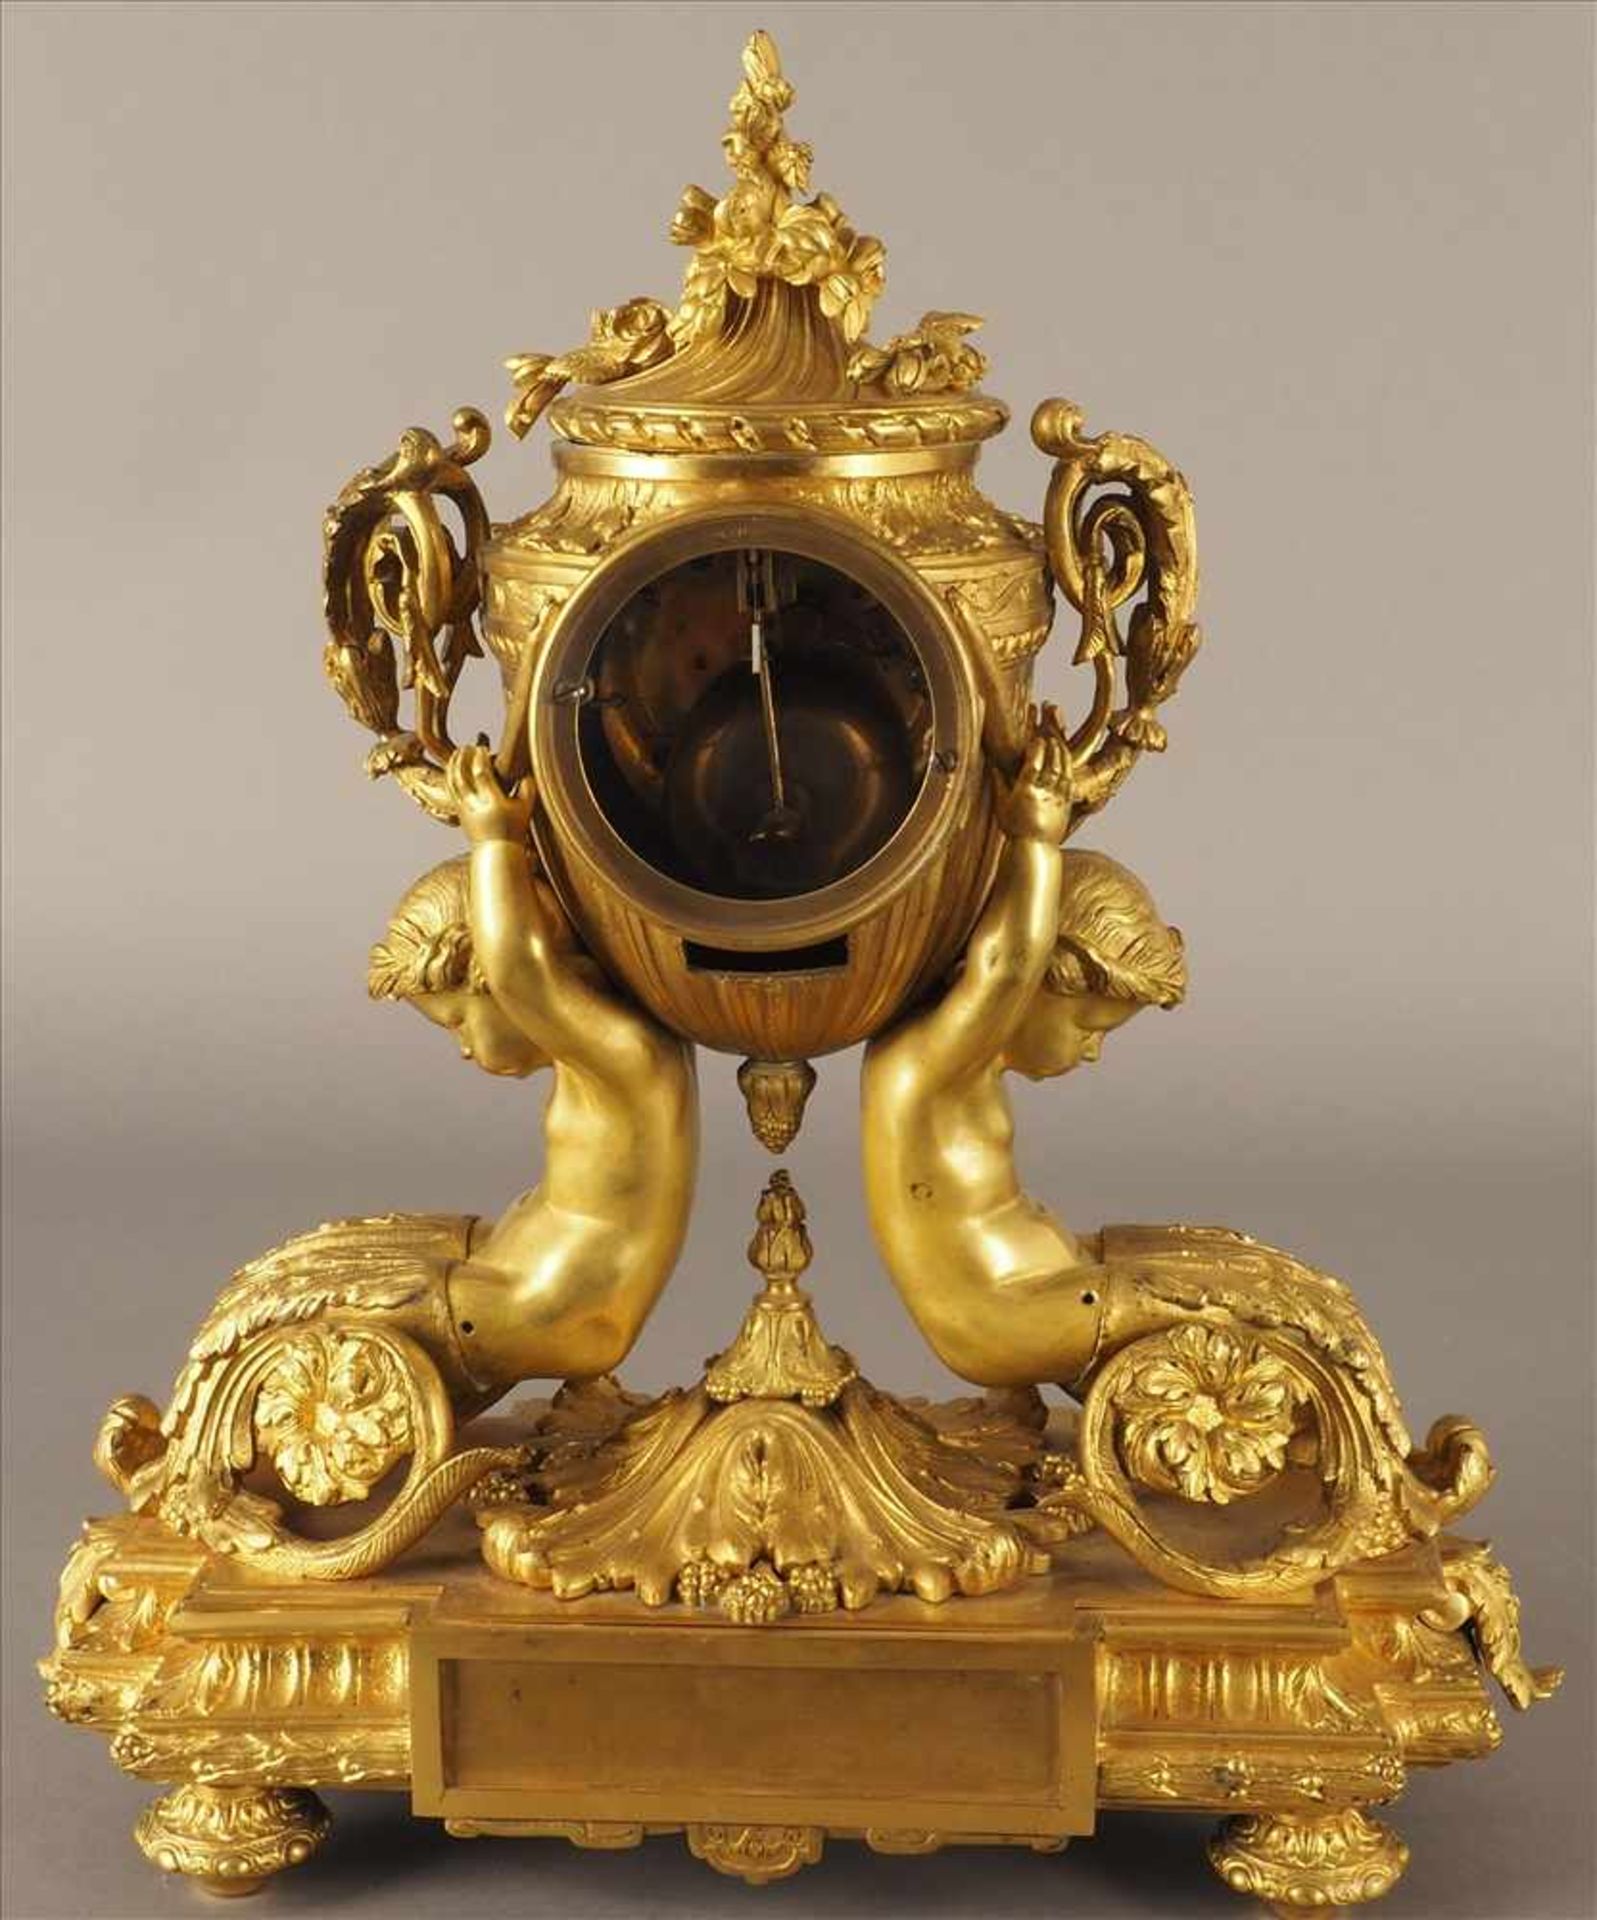 Feuervergoldete PrunkuhrVon Putten getragen, Bronze, feuervergoldet, 19.Jh., Pendel fehlt, Uhrwerk - Bild 4 aus 5